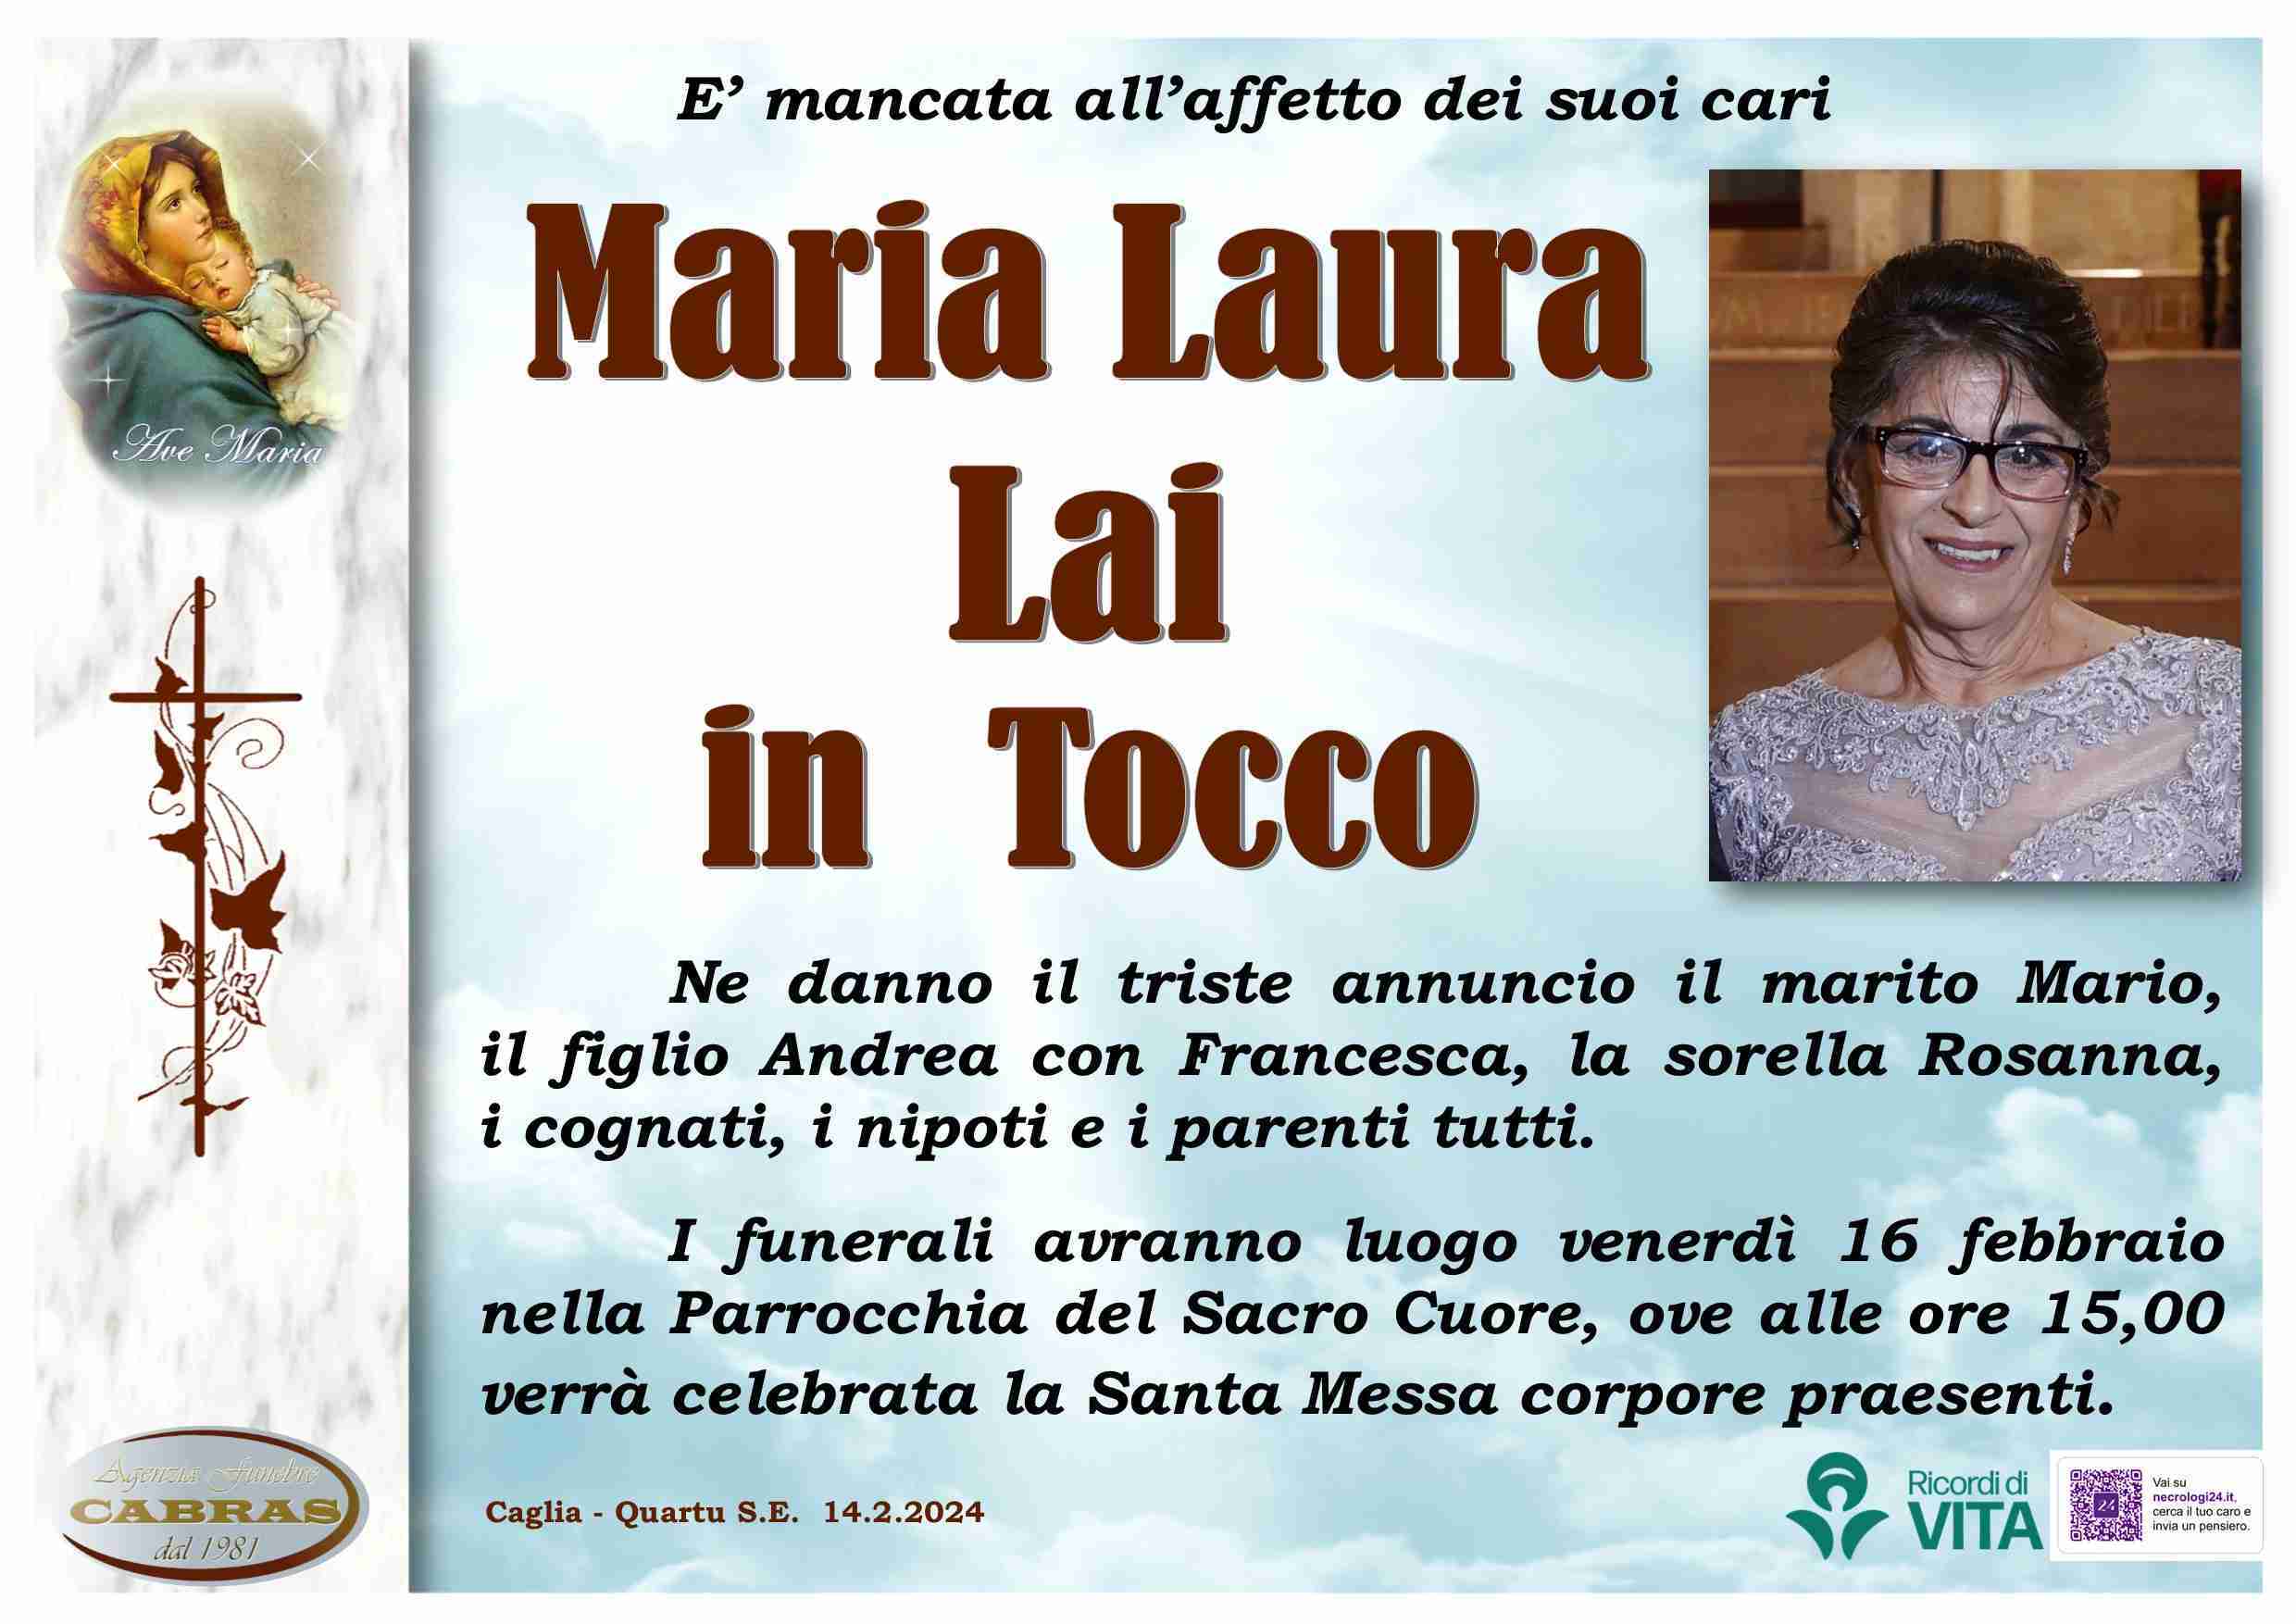 Maria Laura Lai